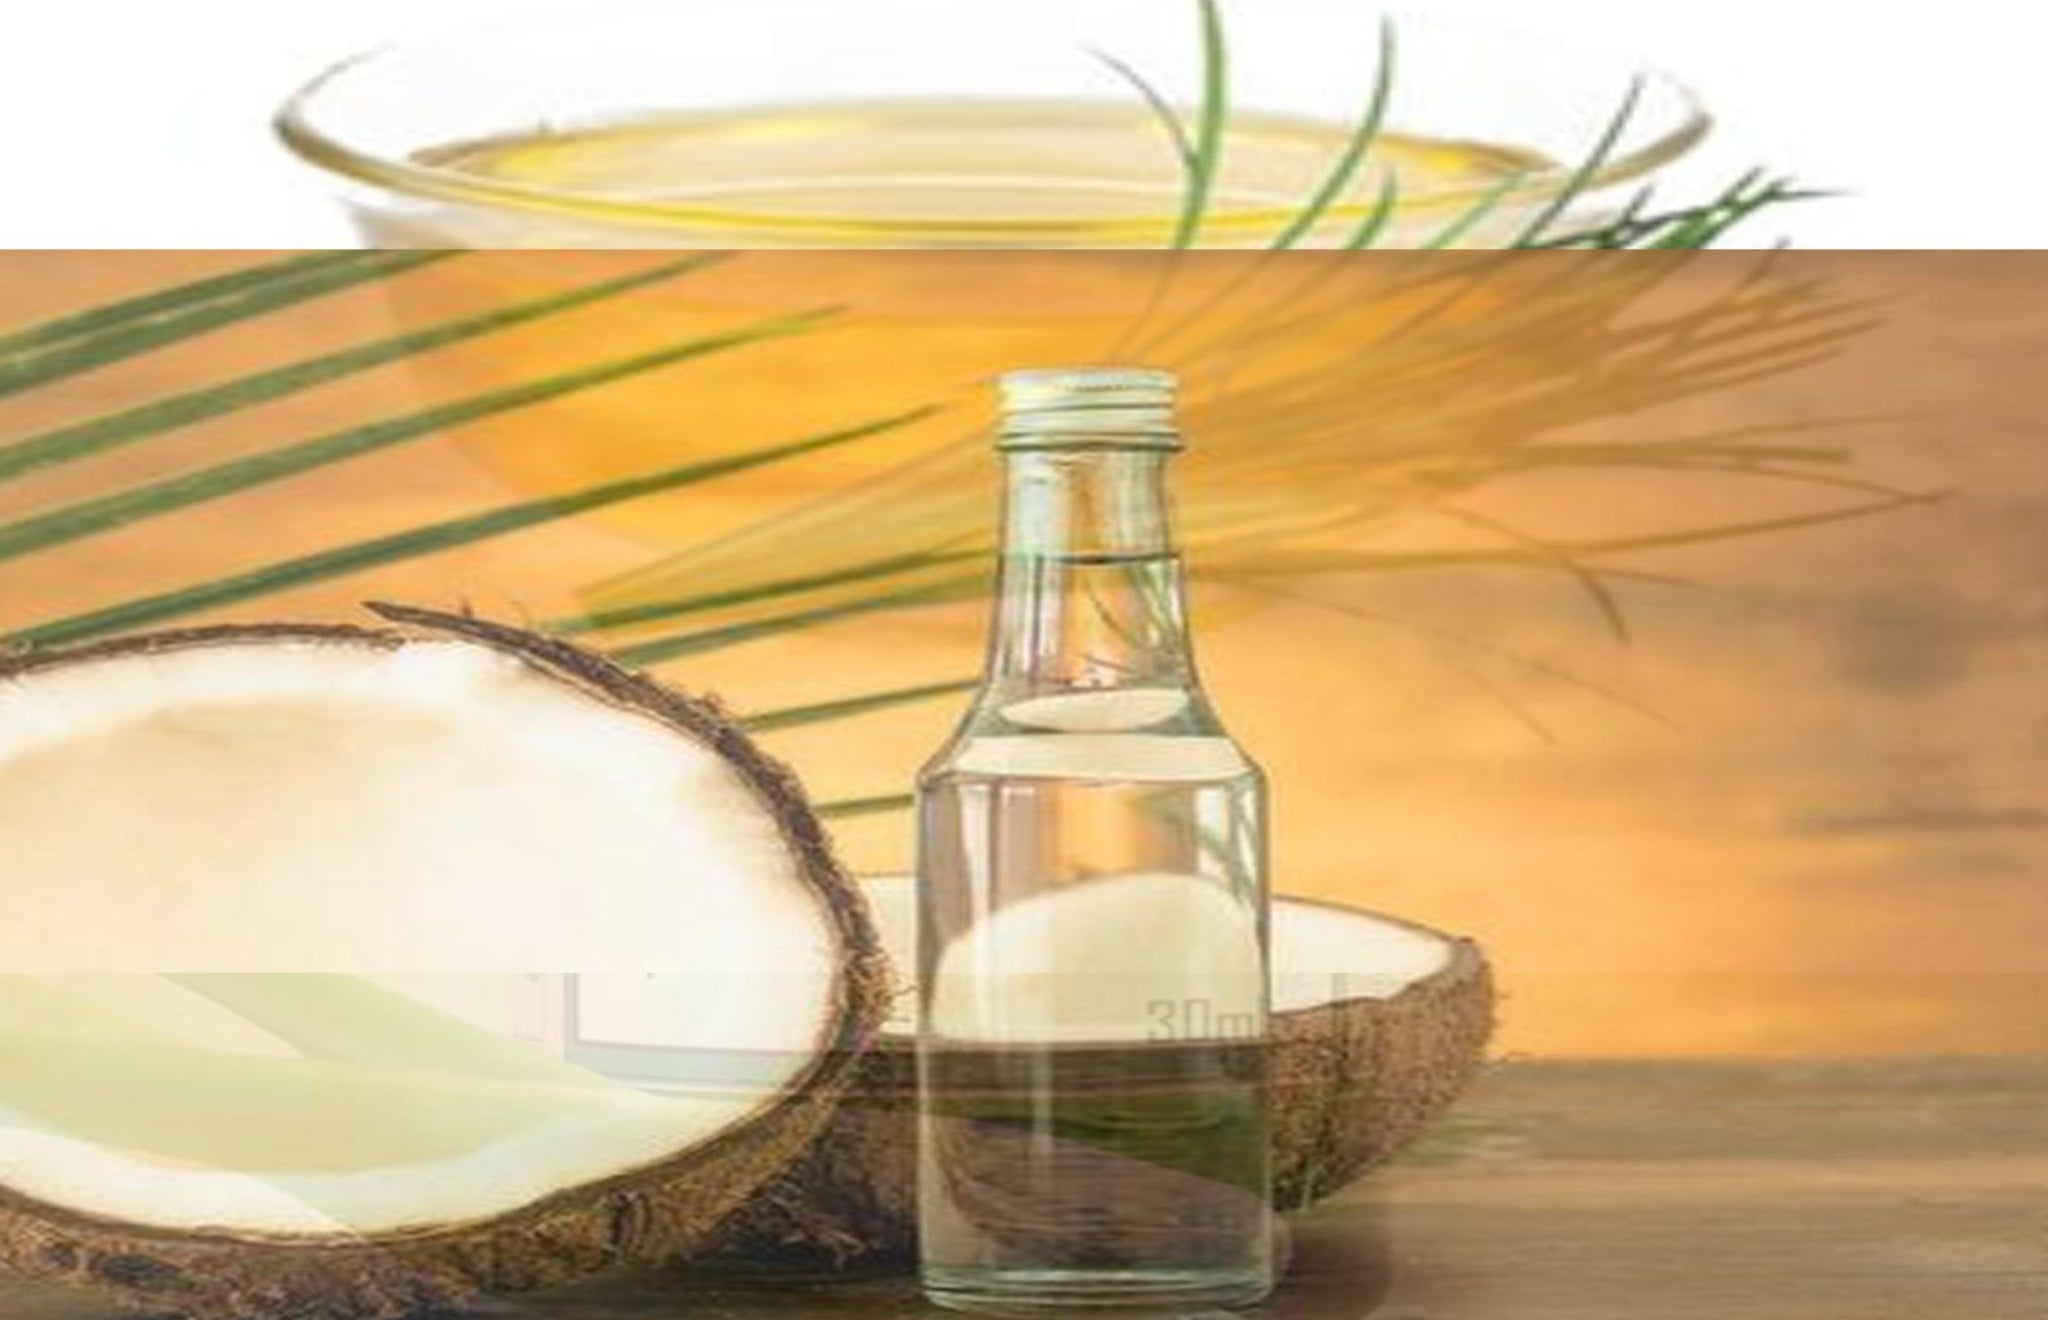 TLCO-001- Coconut oil - Thalir Leed®